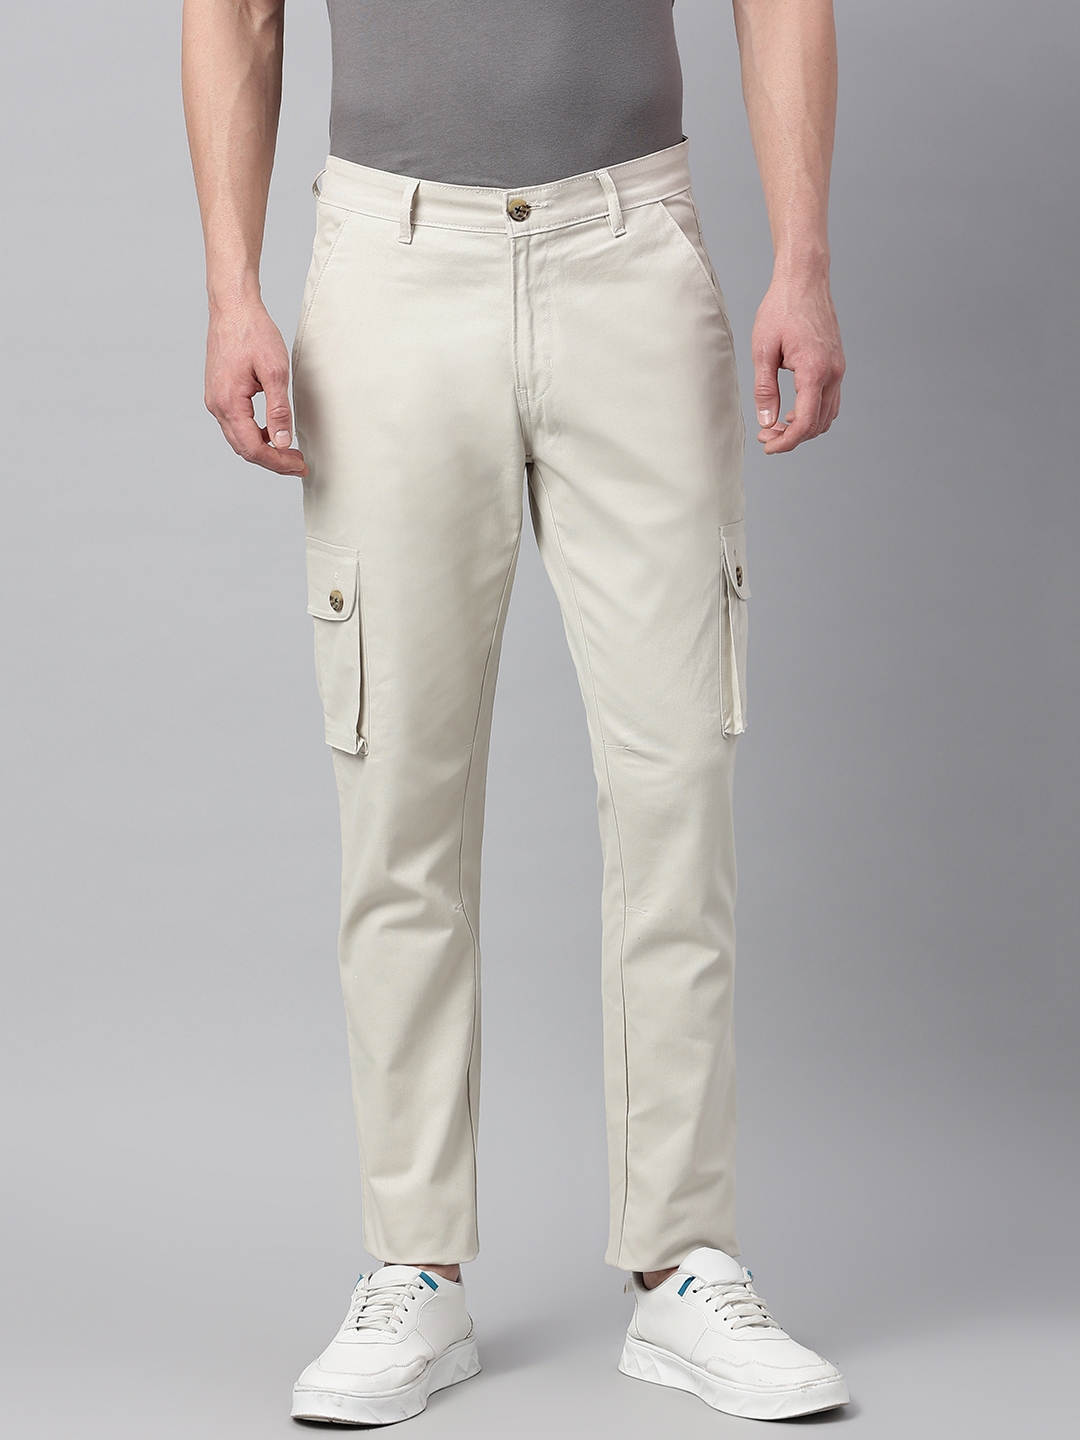 Buy Grey Trousers  Pants for Men by Hubberholme Online  Ajiocom